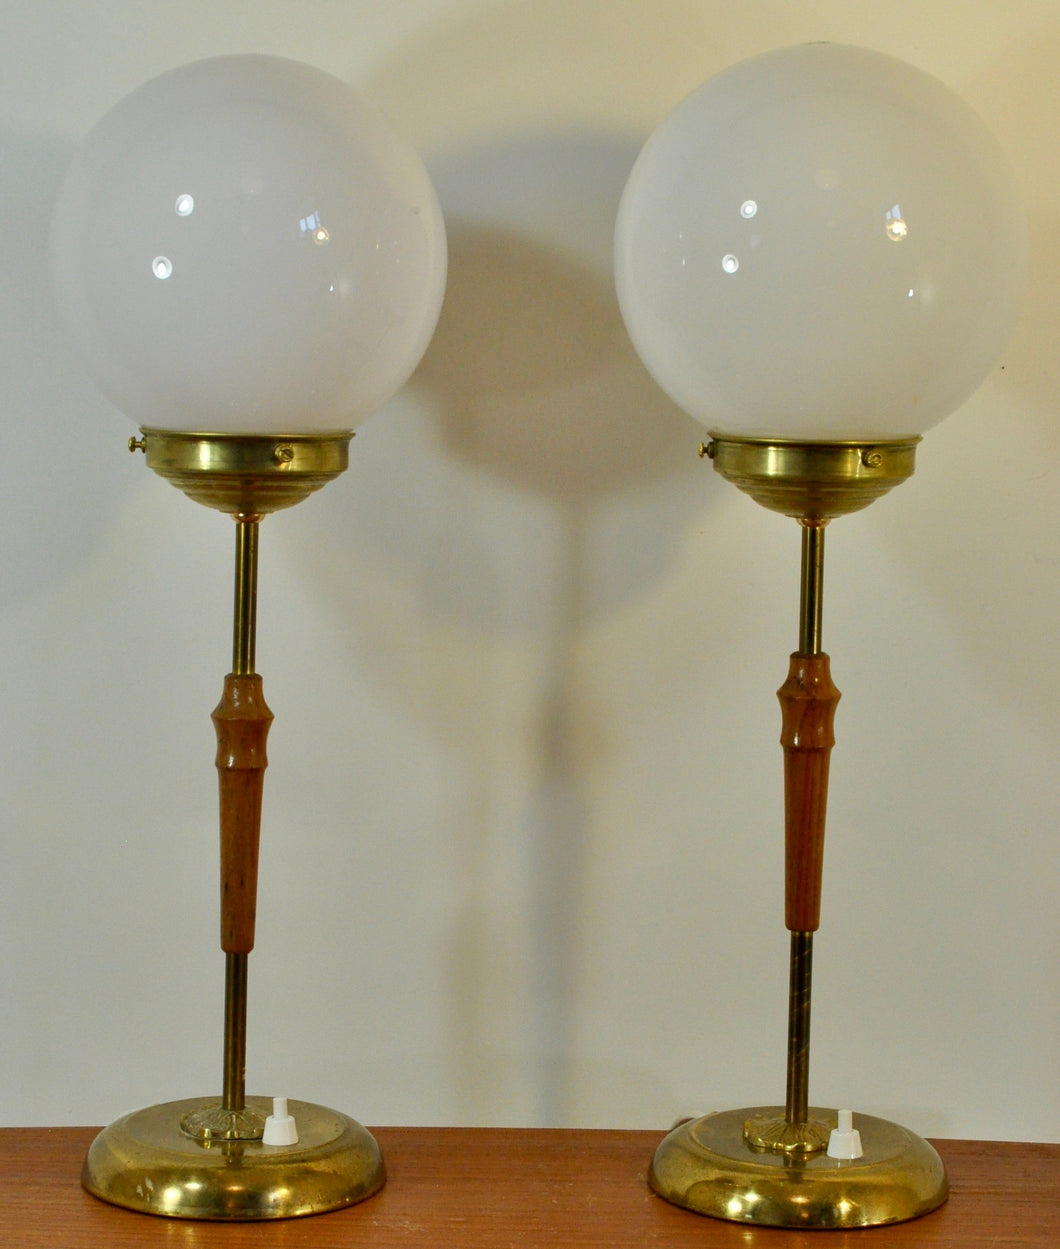 Paret bordslampor med glober